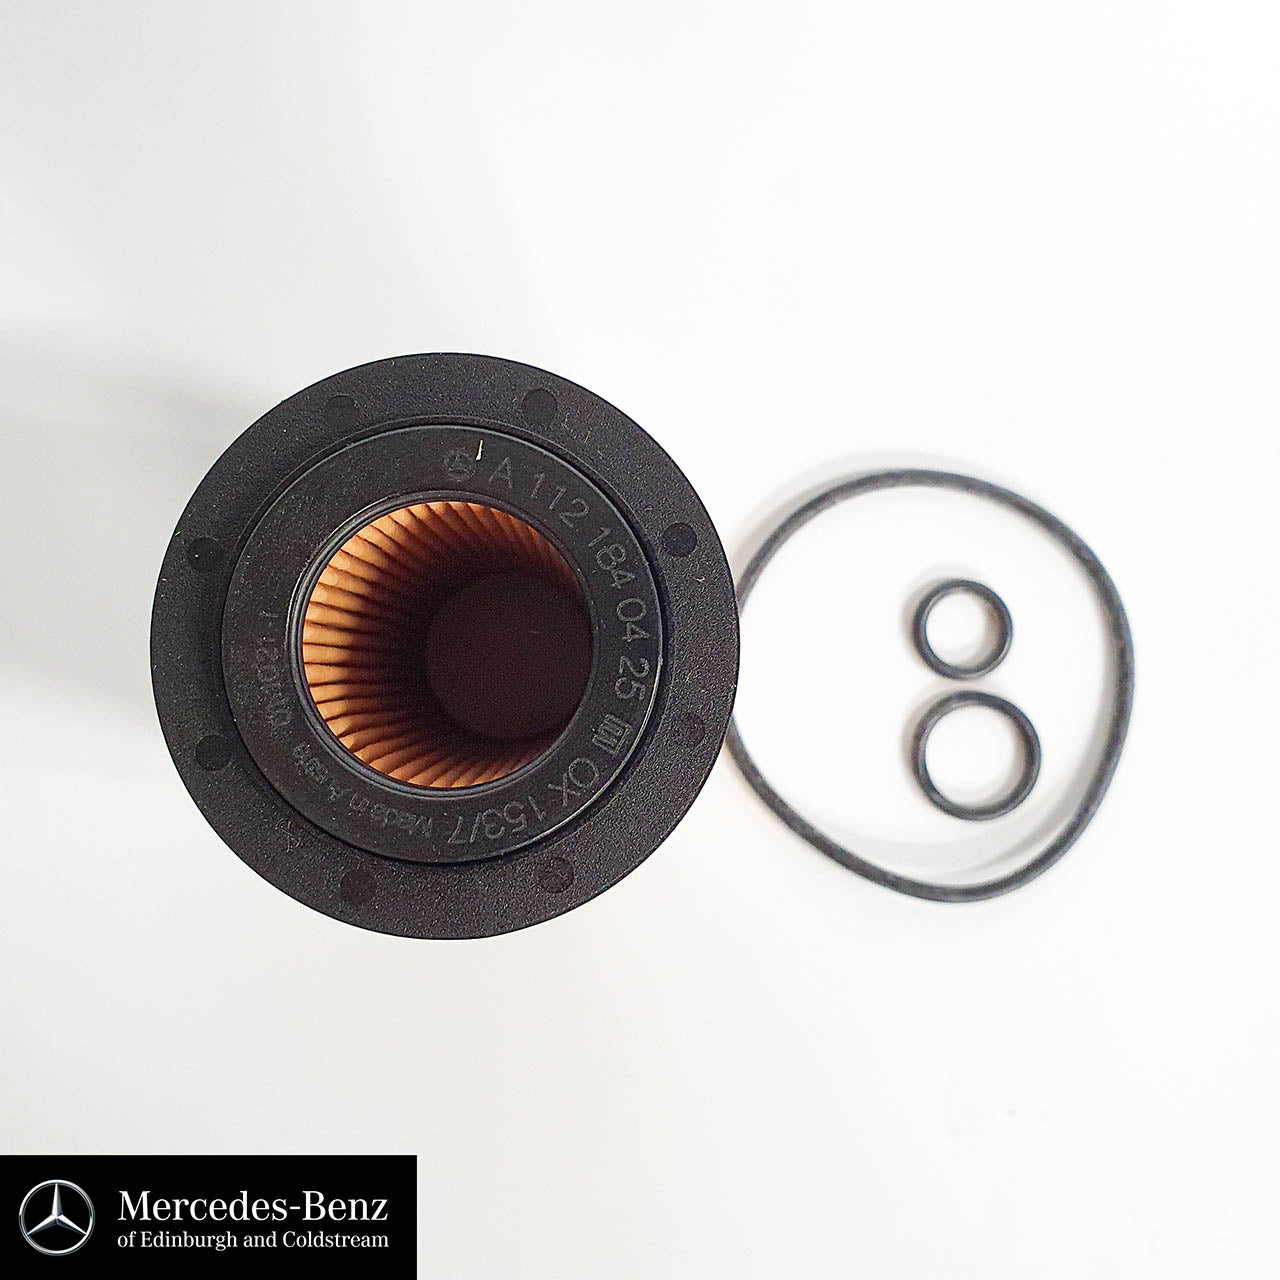 Genuine Mercedes-Benz Oil Filter for OM651 diesel engine